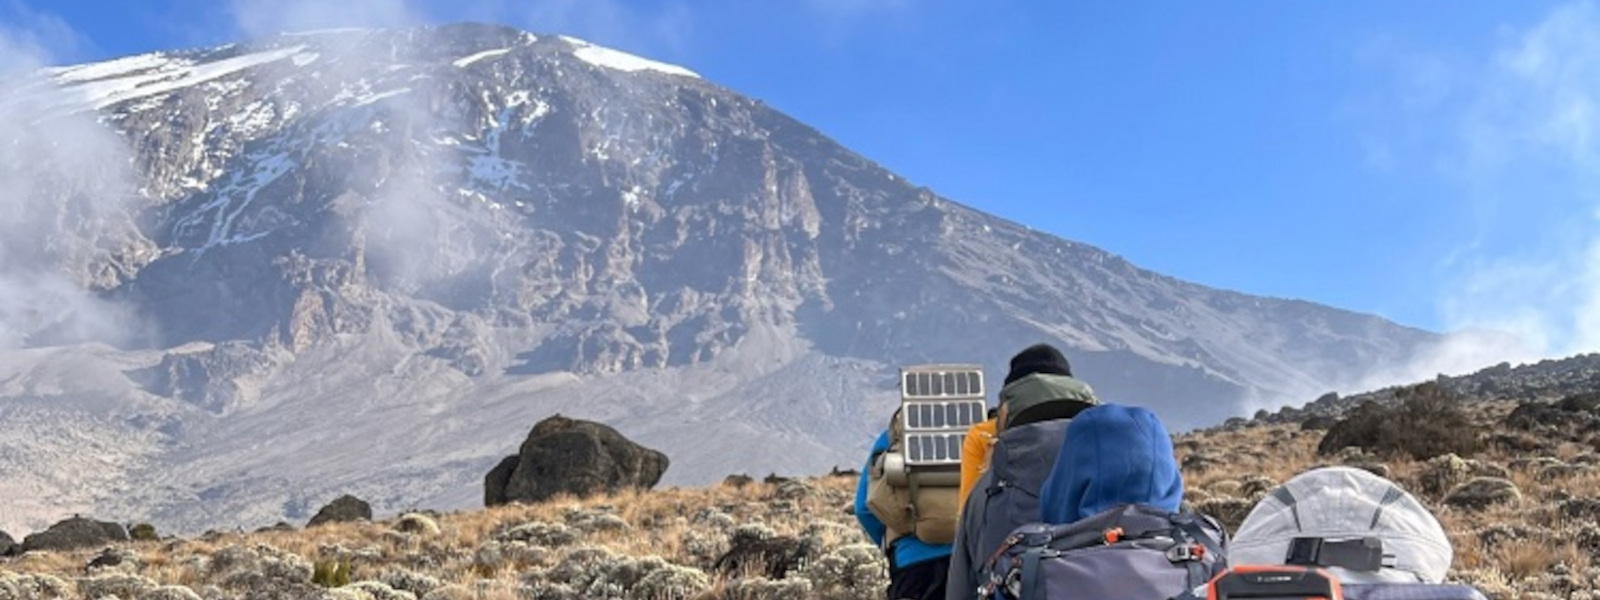 Mount Kilimanjaro via Machame Route